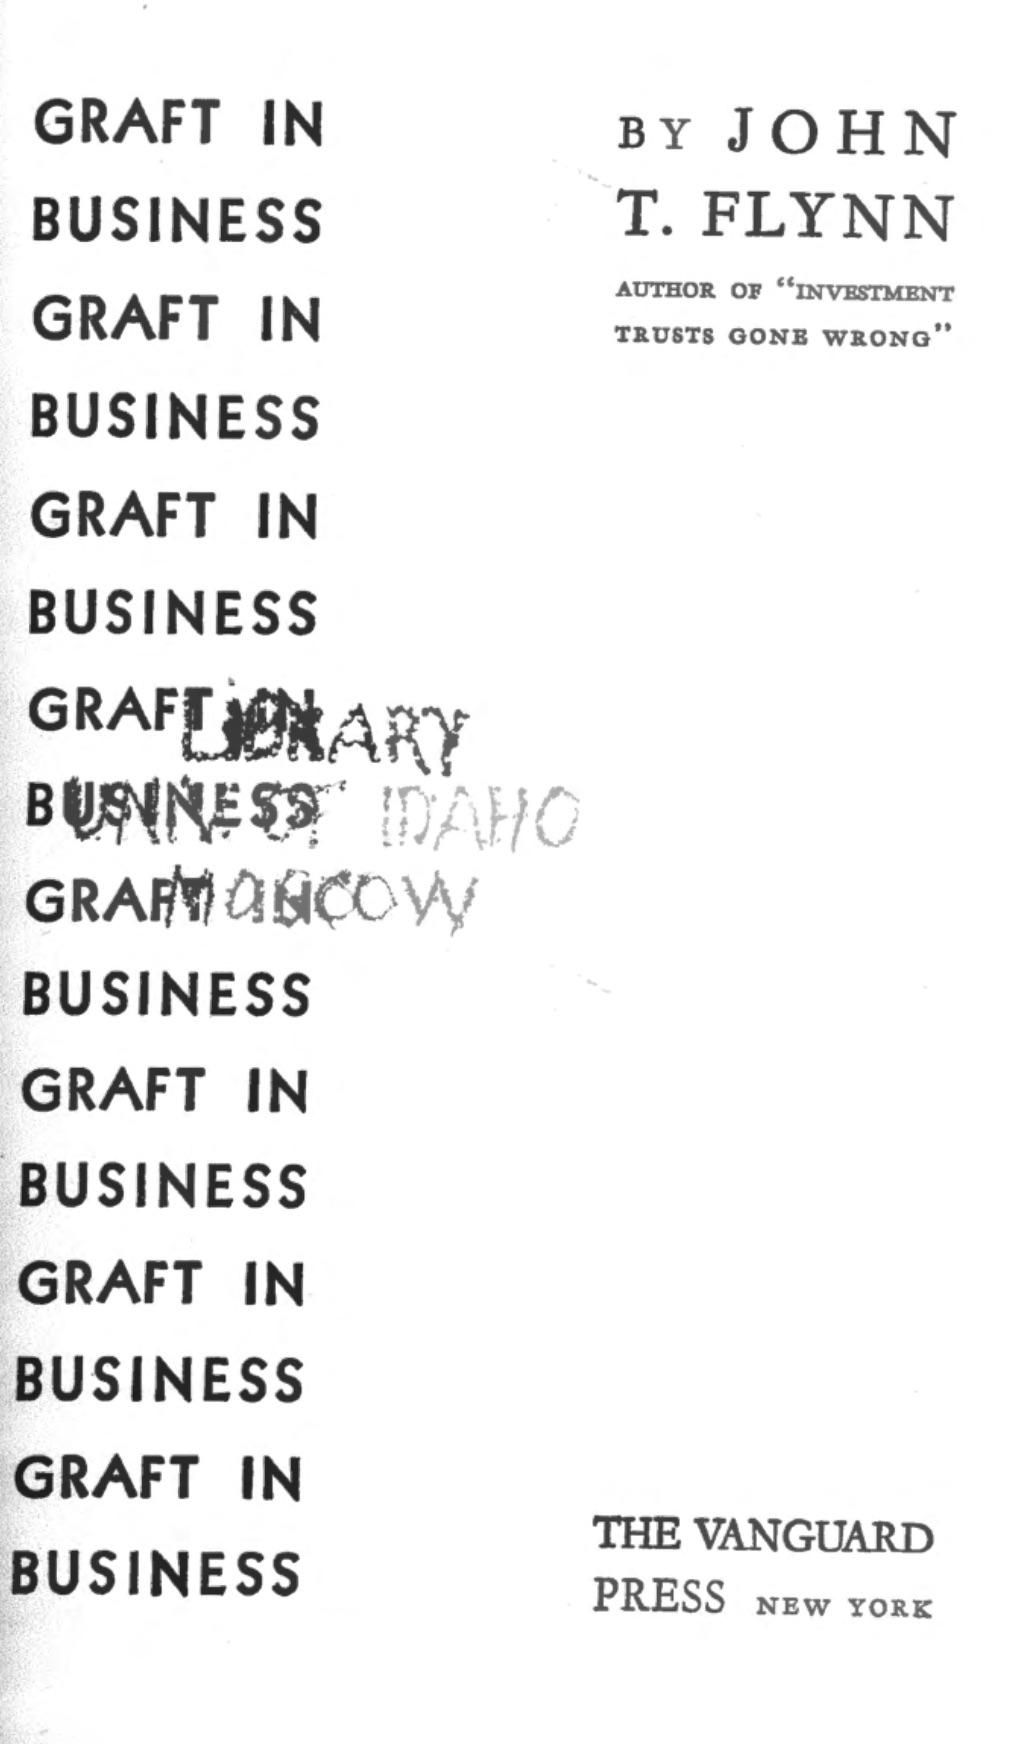 Graft in Business (1931) by John T. Flynn